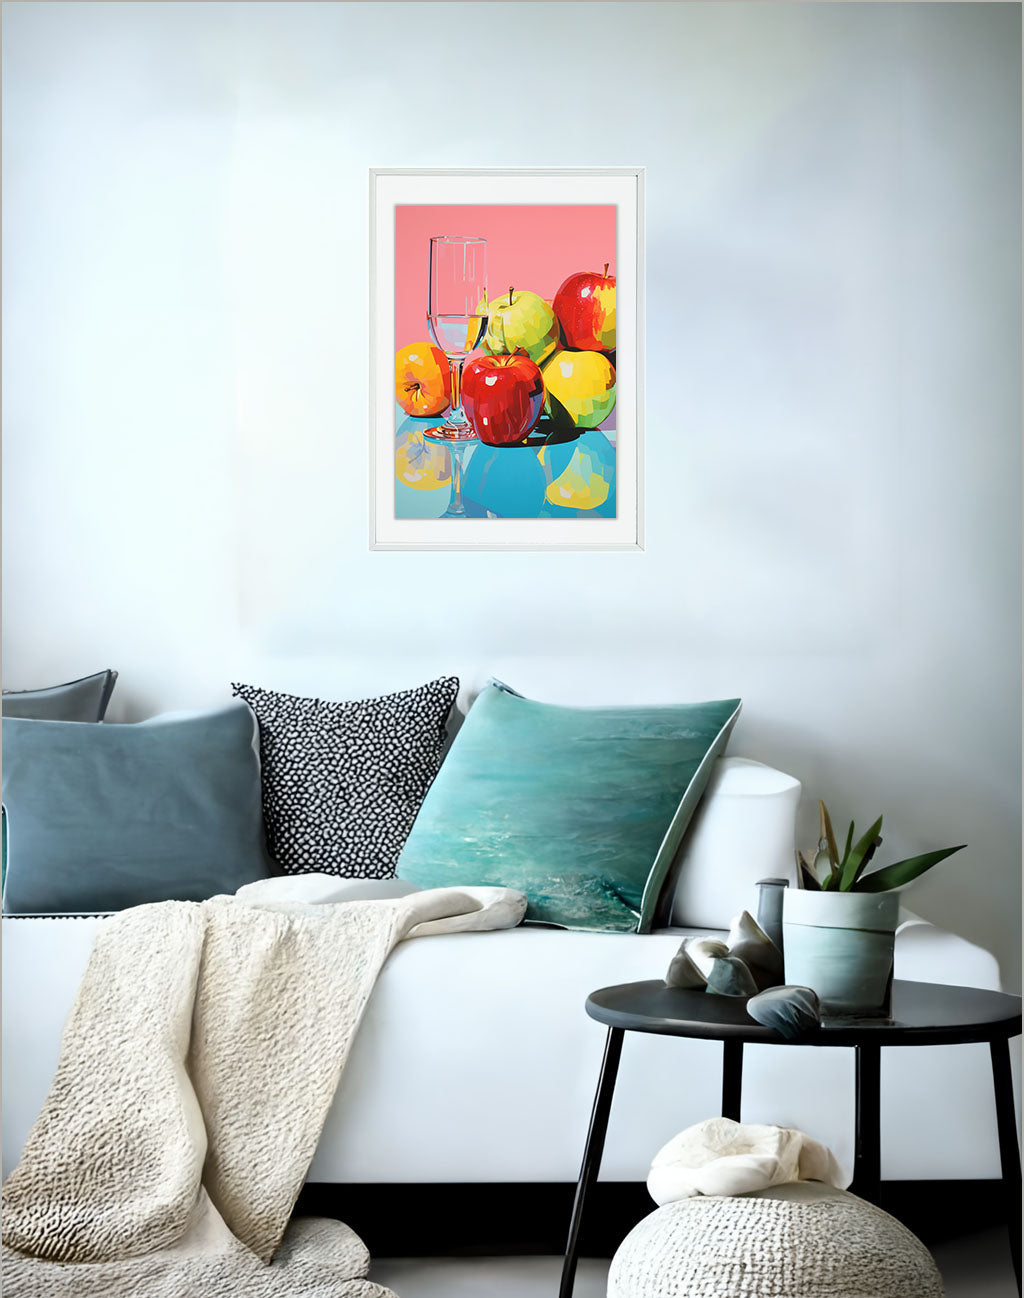 りんごのアートポスター:apple_86e2 / キッチン_フルーツと野菜_のポスター画像ソファ近くに設置したイメージ